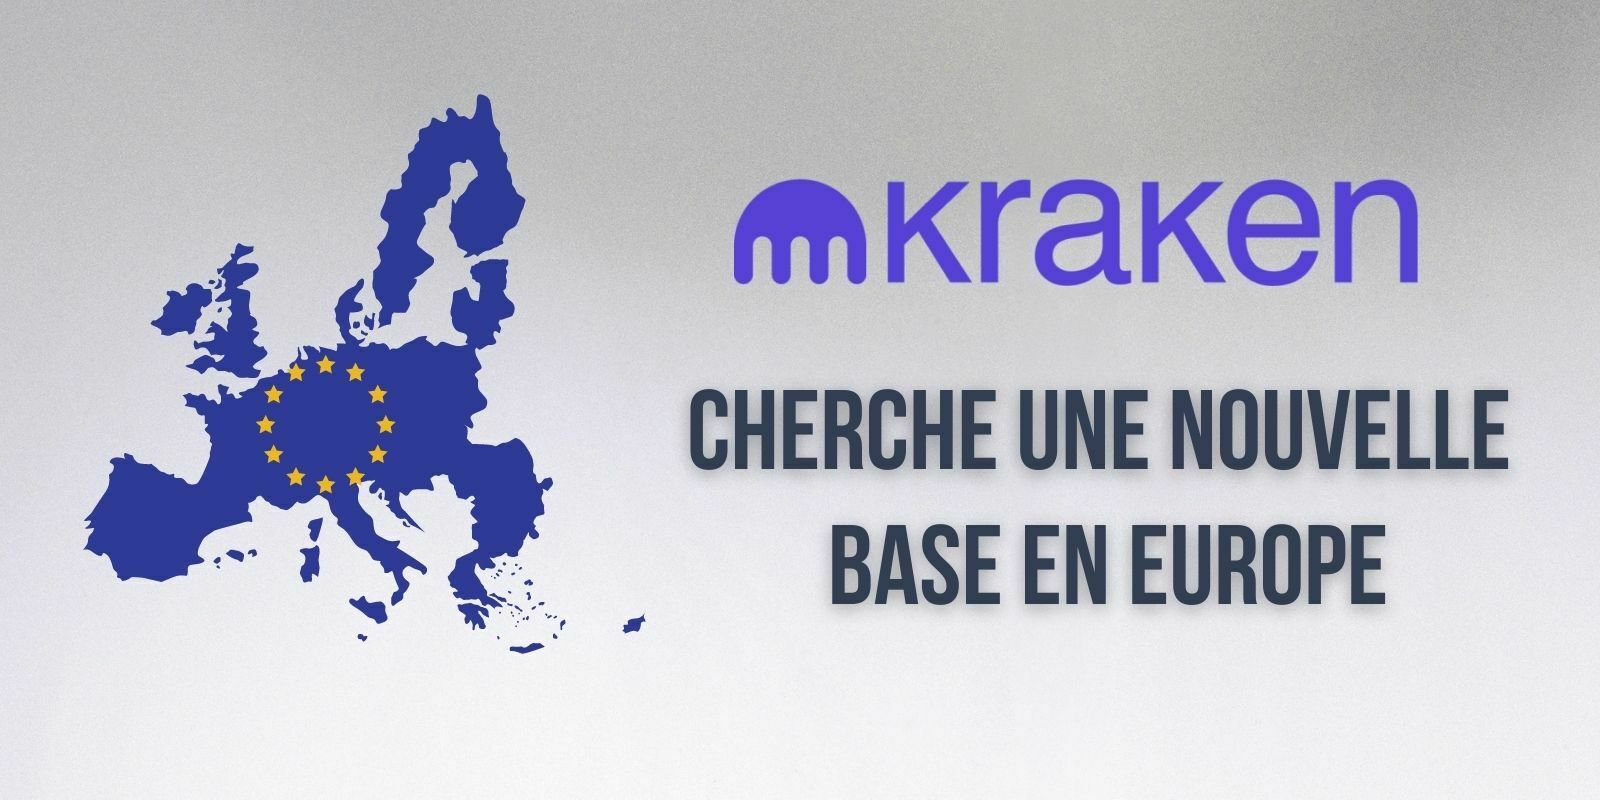 Suite au Brexit, Kraken cherche une nouvelle licence pour réintégrer le marché européen